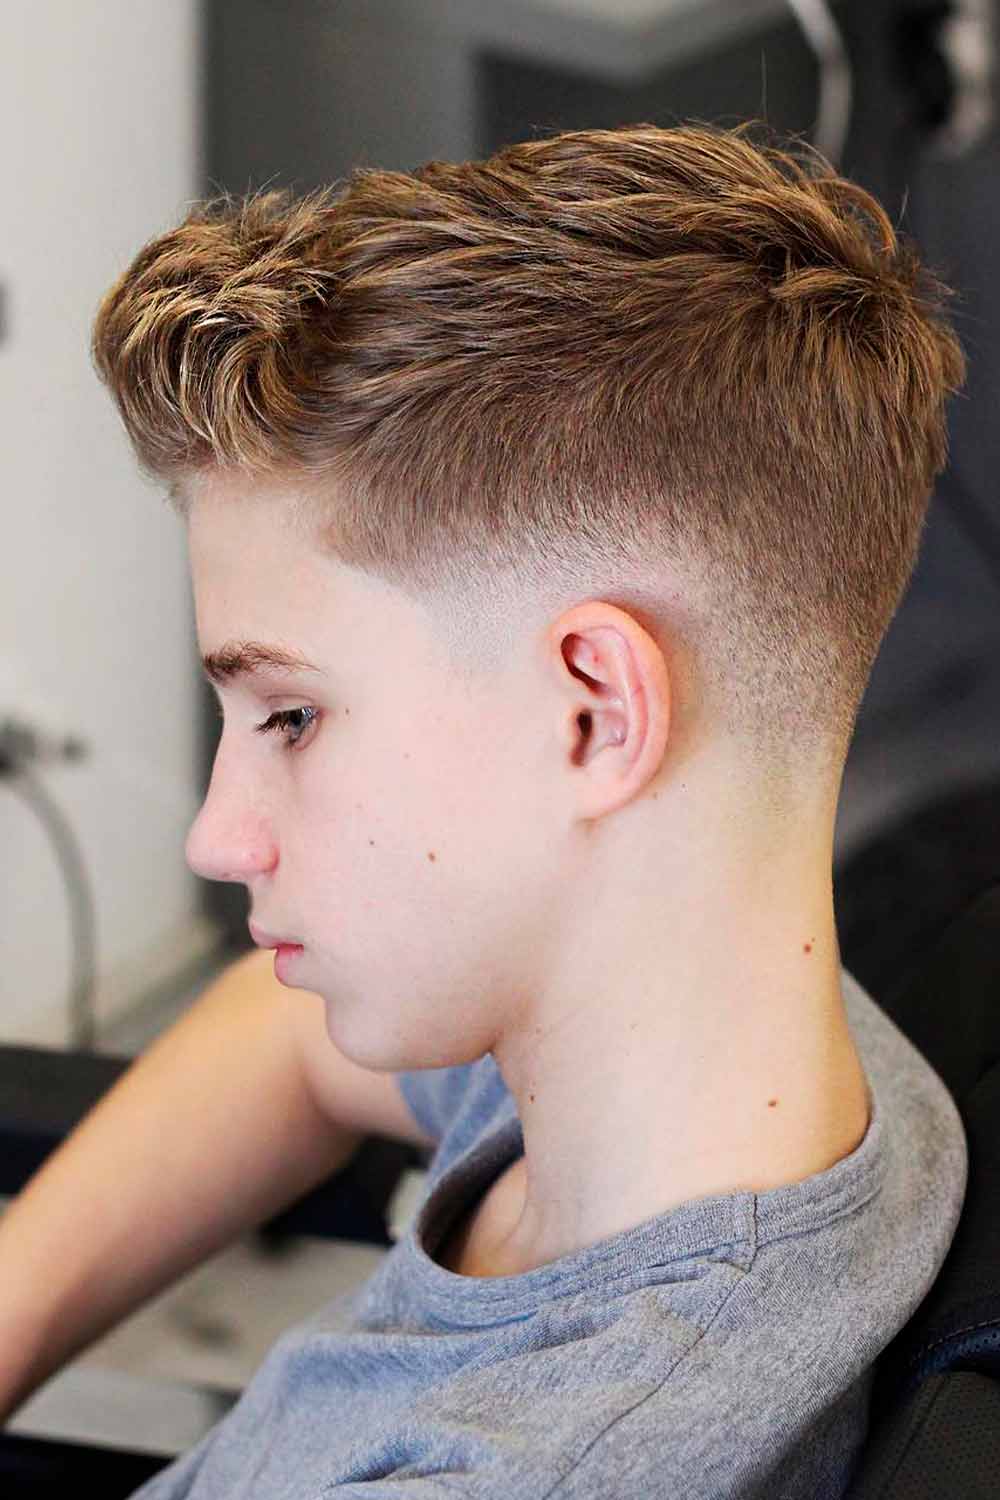 Low Fade Taper Toddler Boy Haircuts #boyshaircuts #kidshaircut #boyhaircuts